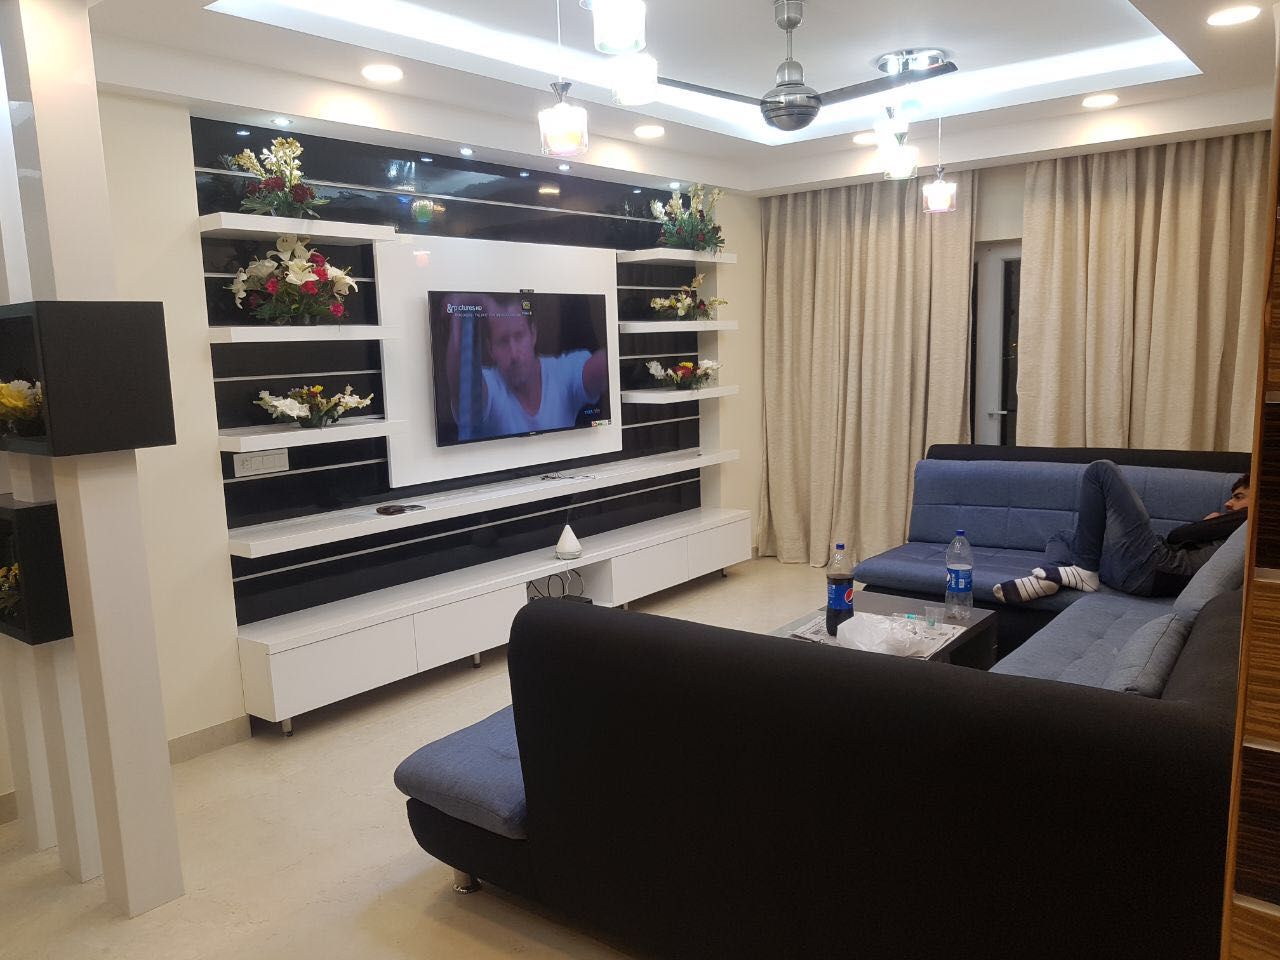 Jain's residency, Fabros Interiors Fabros Interiors Salas de estilo moderno Muebles para televisión y equipos